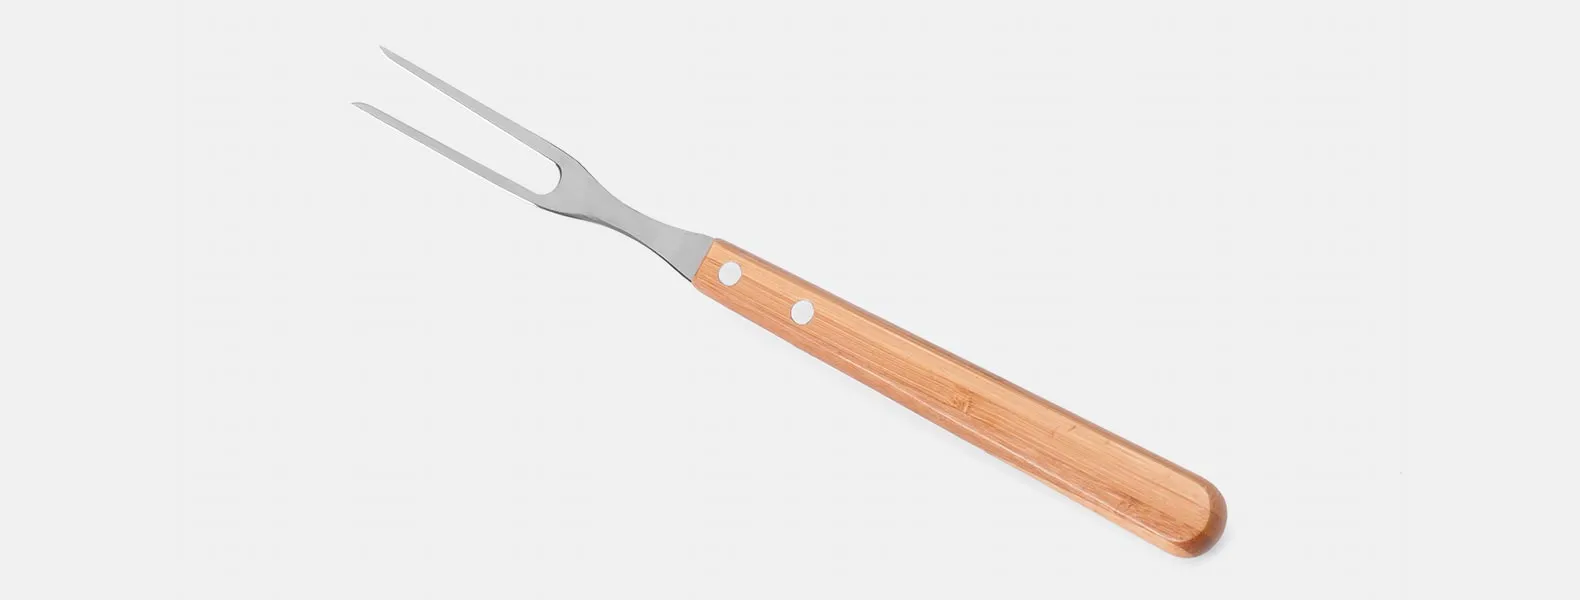 Kit composto por seis peças com cabos em bambu e lâminas em aço Inox com rebites resistentes, sendo uma faca 8”, um garfo trinchante, uma chaira 8”, um cutelo 6”, uma faca 5” para desossar e uma faca 4” de frutas. Estão organizados em fita elástica preta no interior de um estojo.